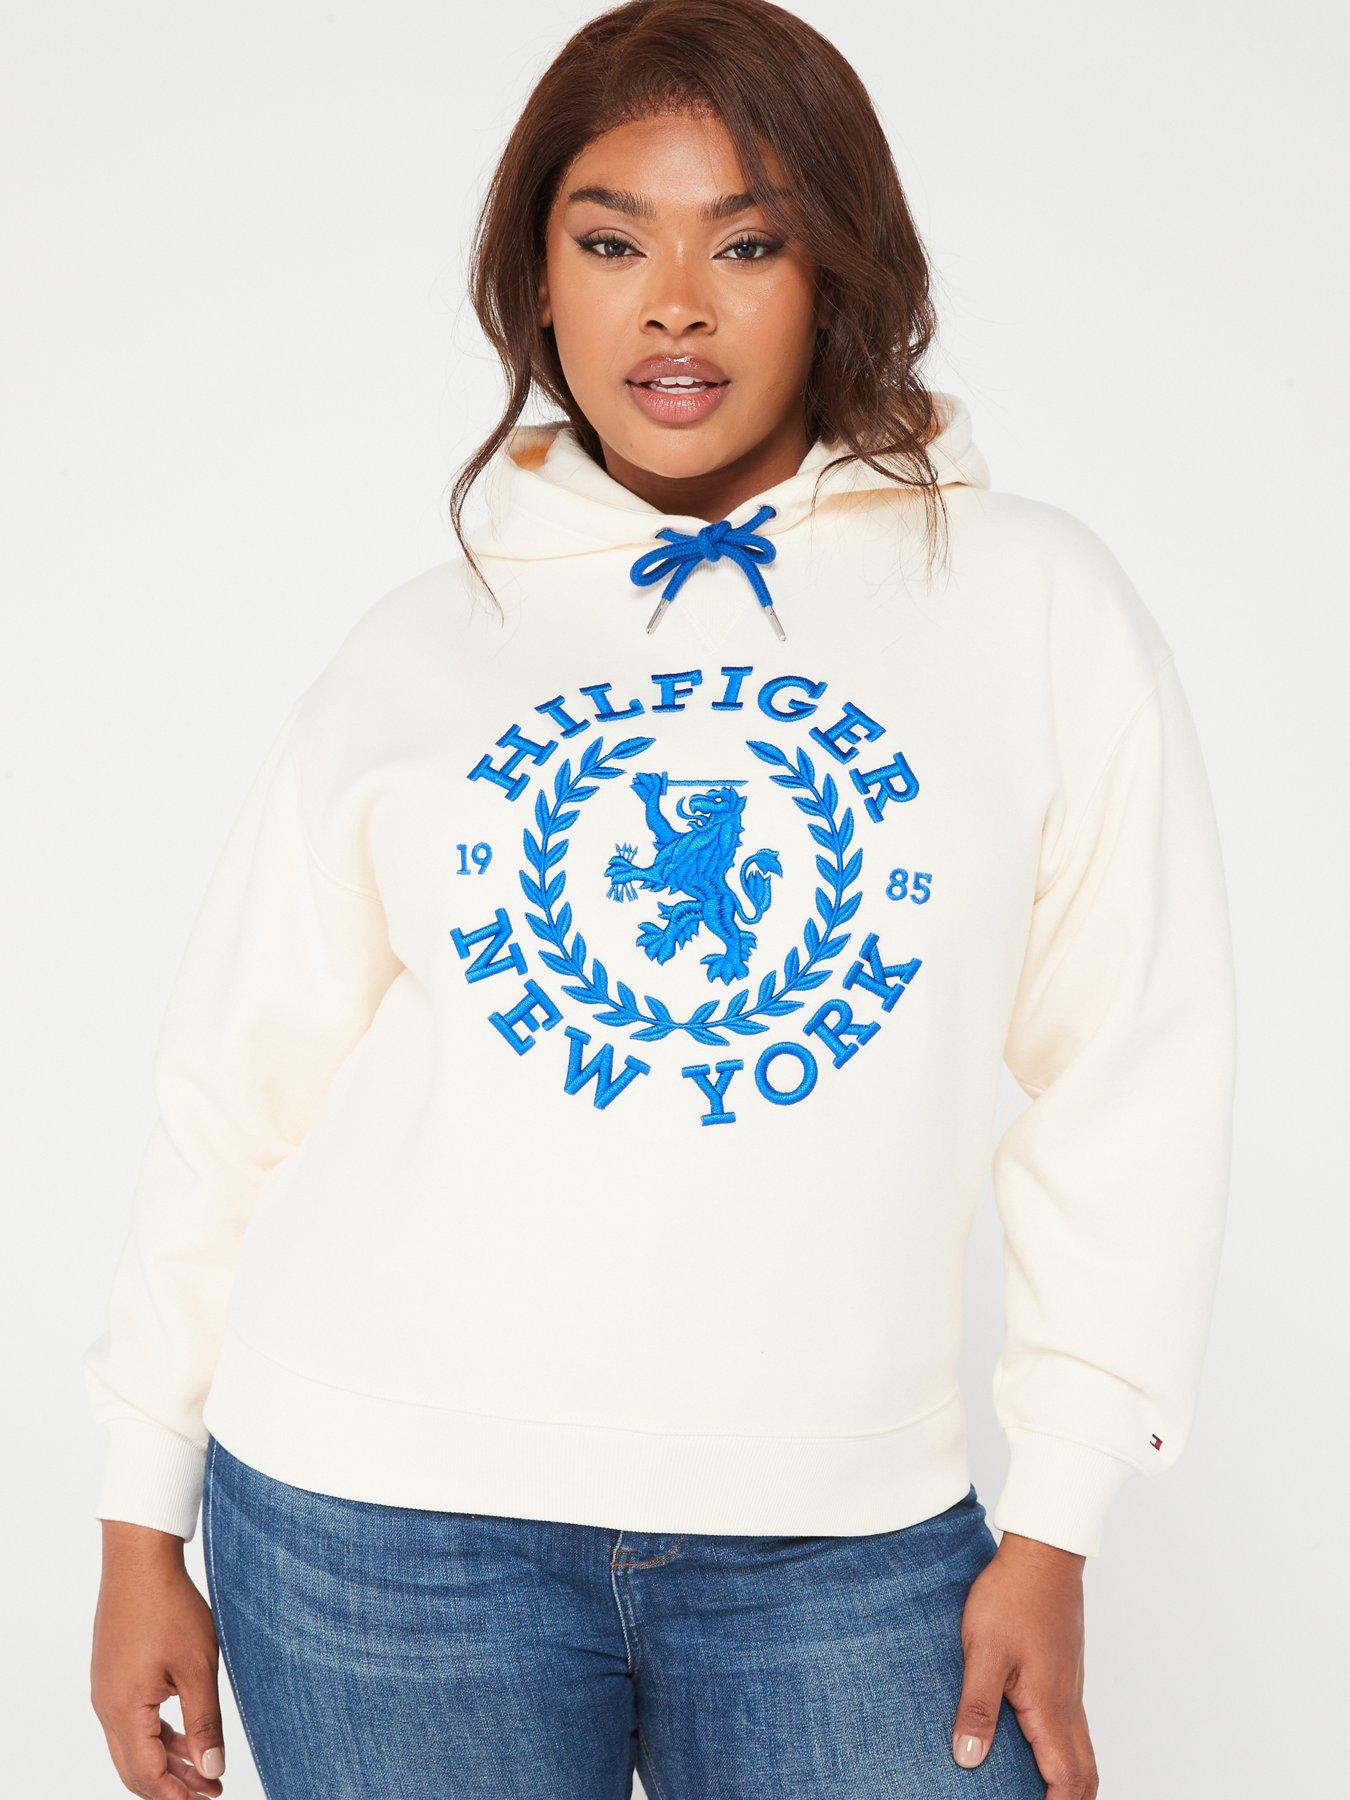 Tommy Hilfiger Women's Fleece 1/4 Zip Pullover Sweatshirt